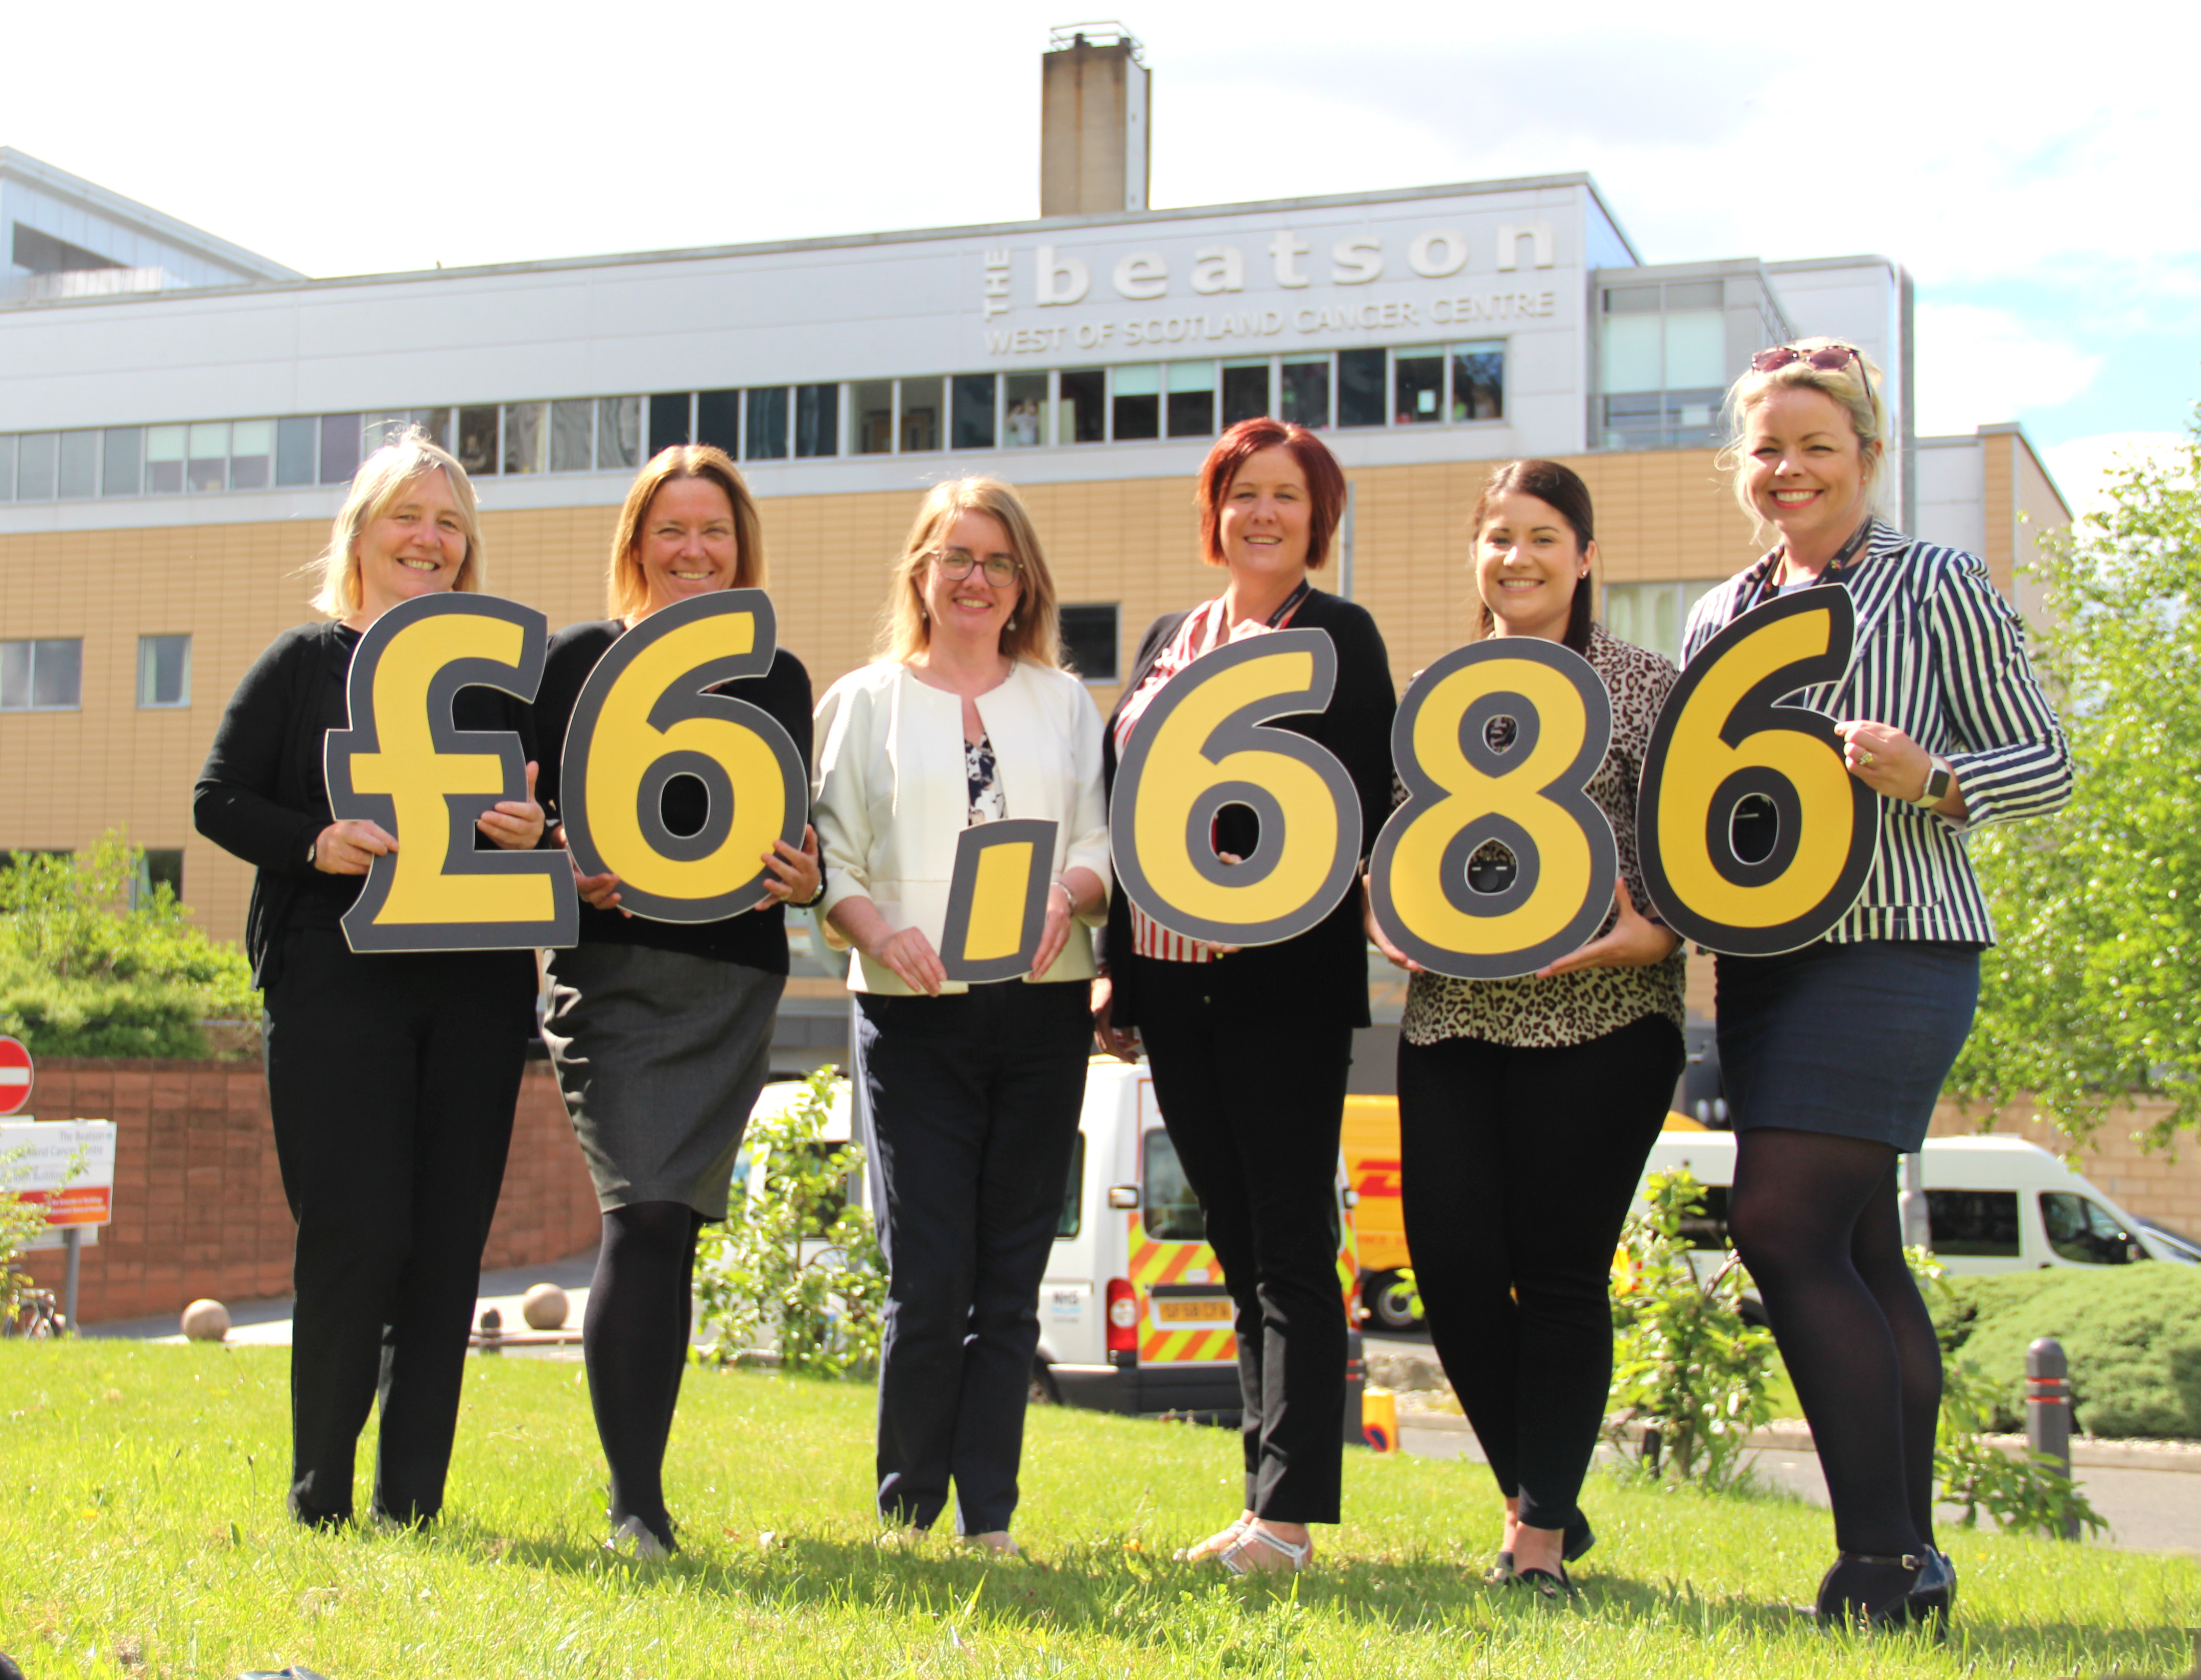 Linstone team raises more than £6,000 from Kilt Walk charity effort